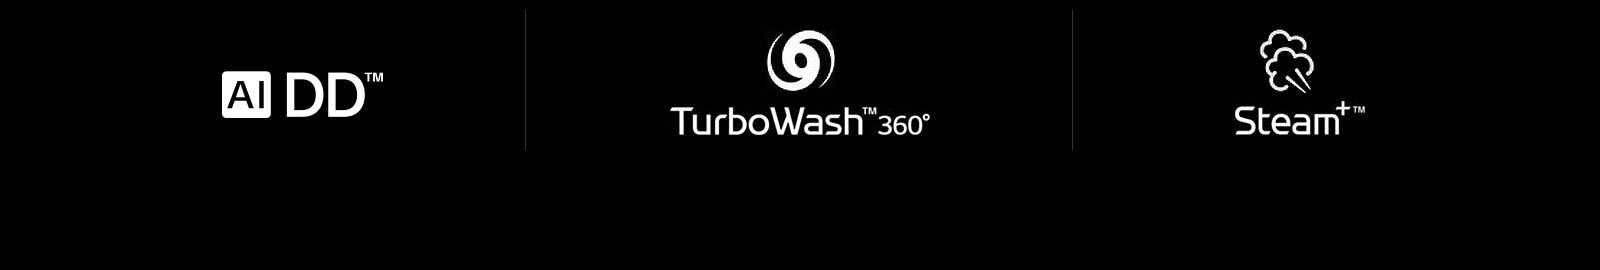 Một hàng có bốn biểu tượng LG là: Dấu hiệu của AI DD. Dấu hiệu TurboWash 360. Dấu hiệu của Steam.